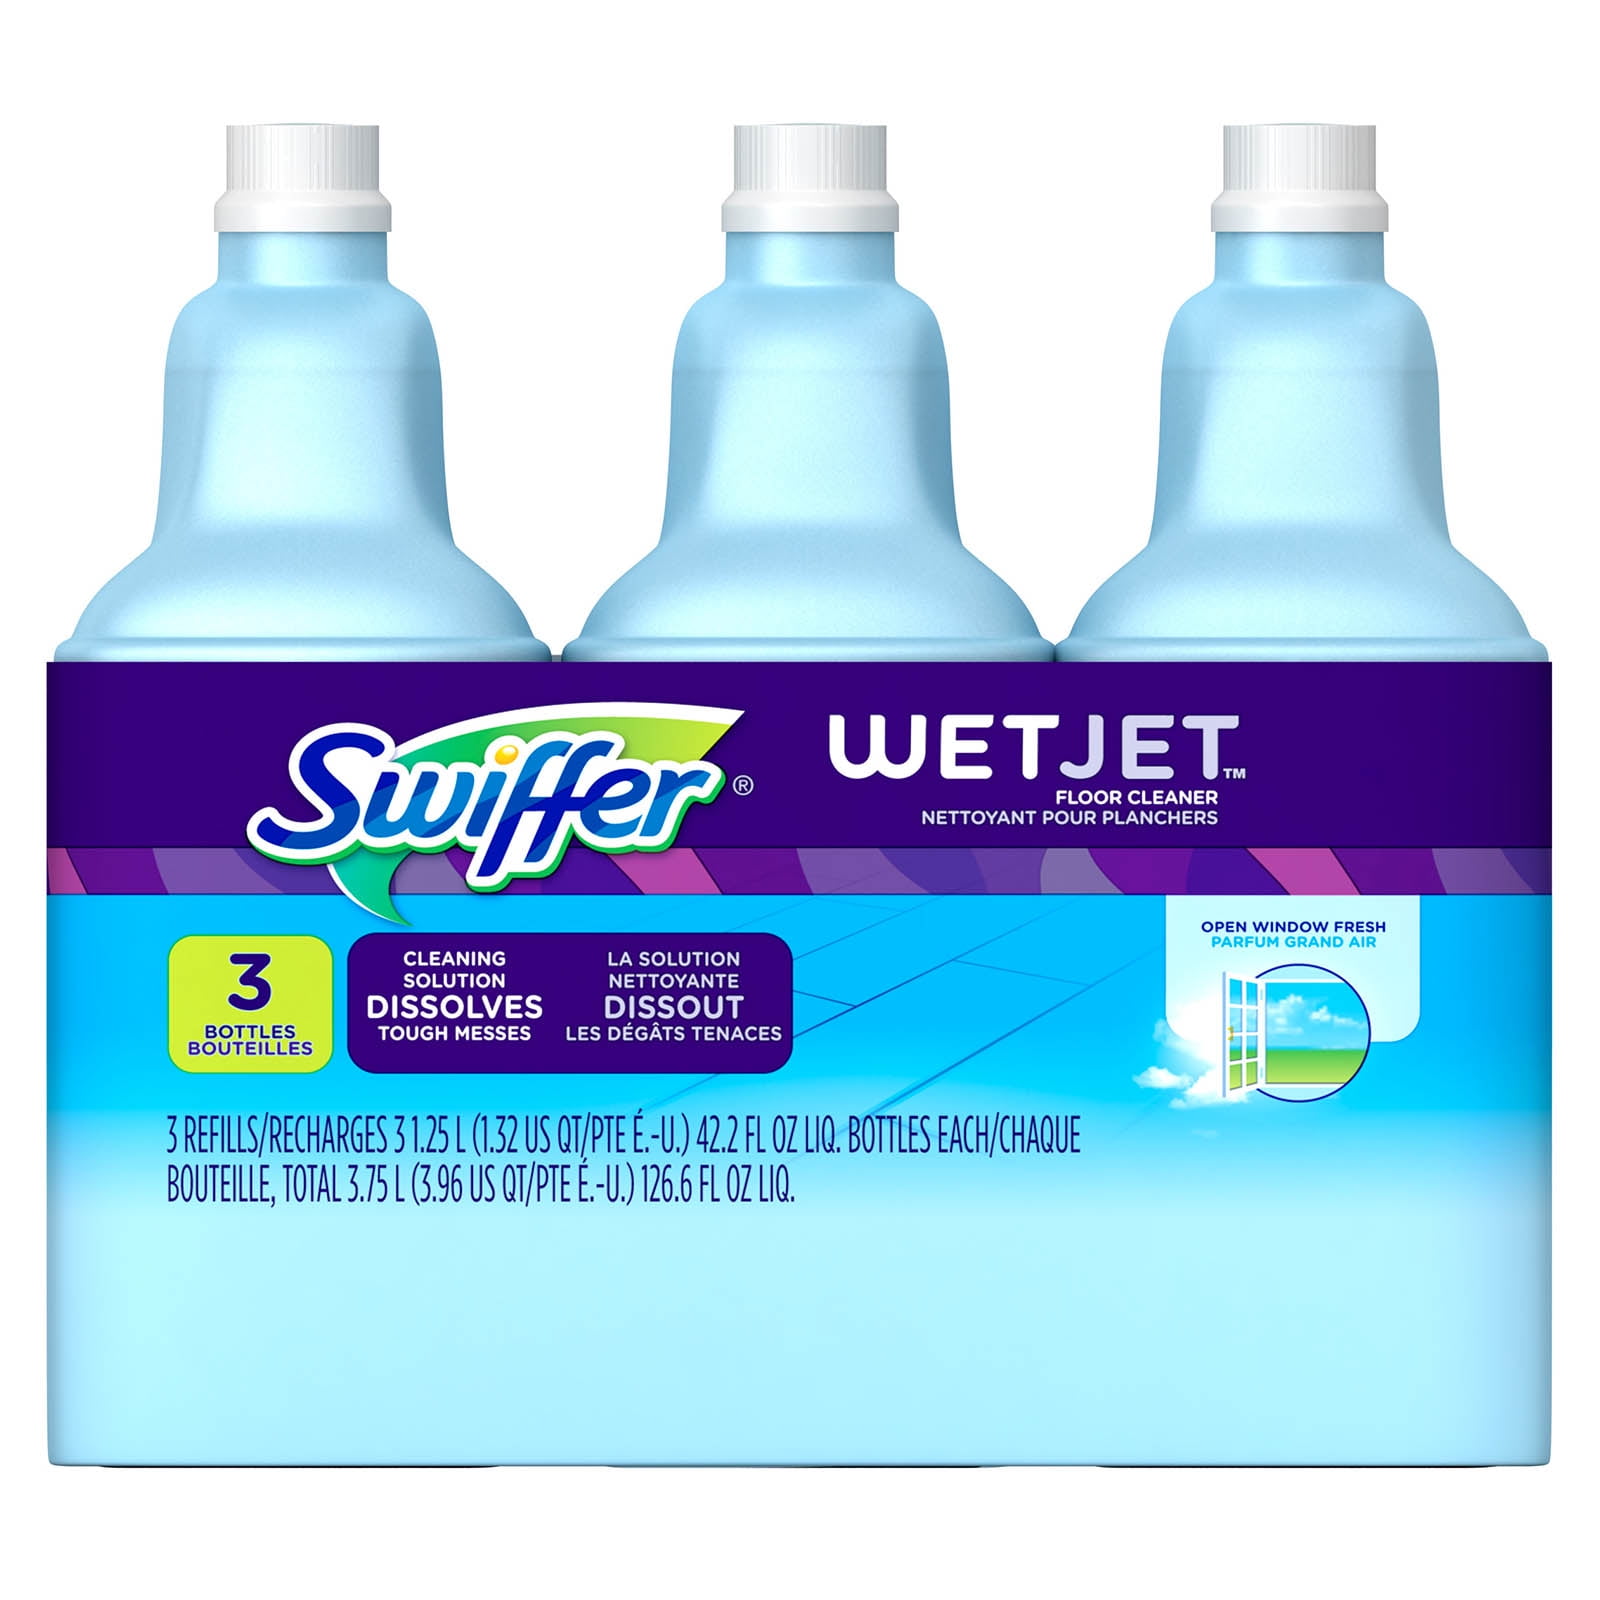 Swiffer Wetjet Spray Mop Floor Cleaner Open Window Fresh Scent 2 Pack 42.2 FL oz 